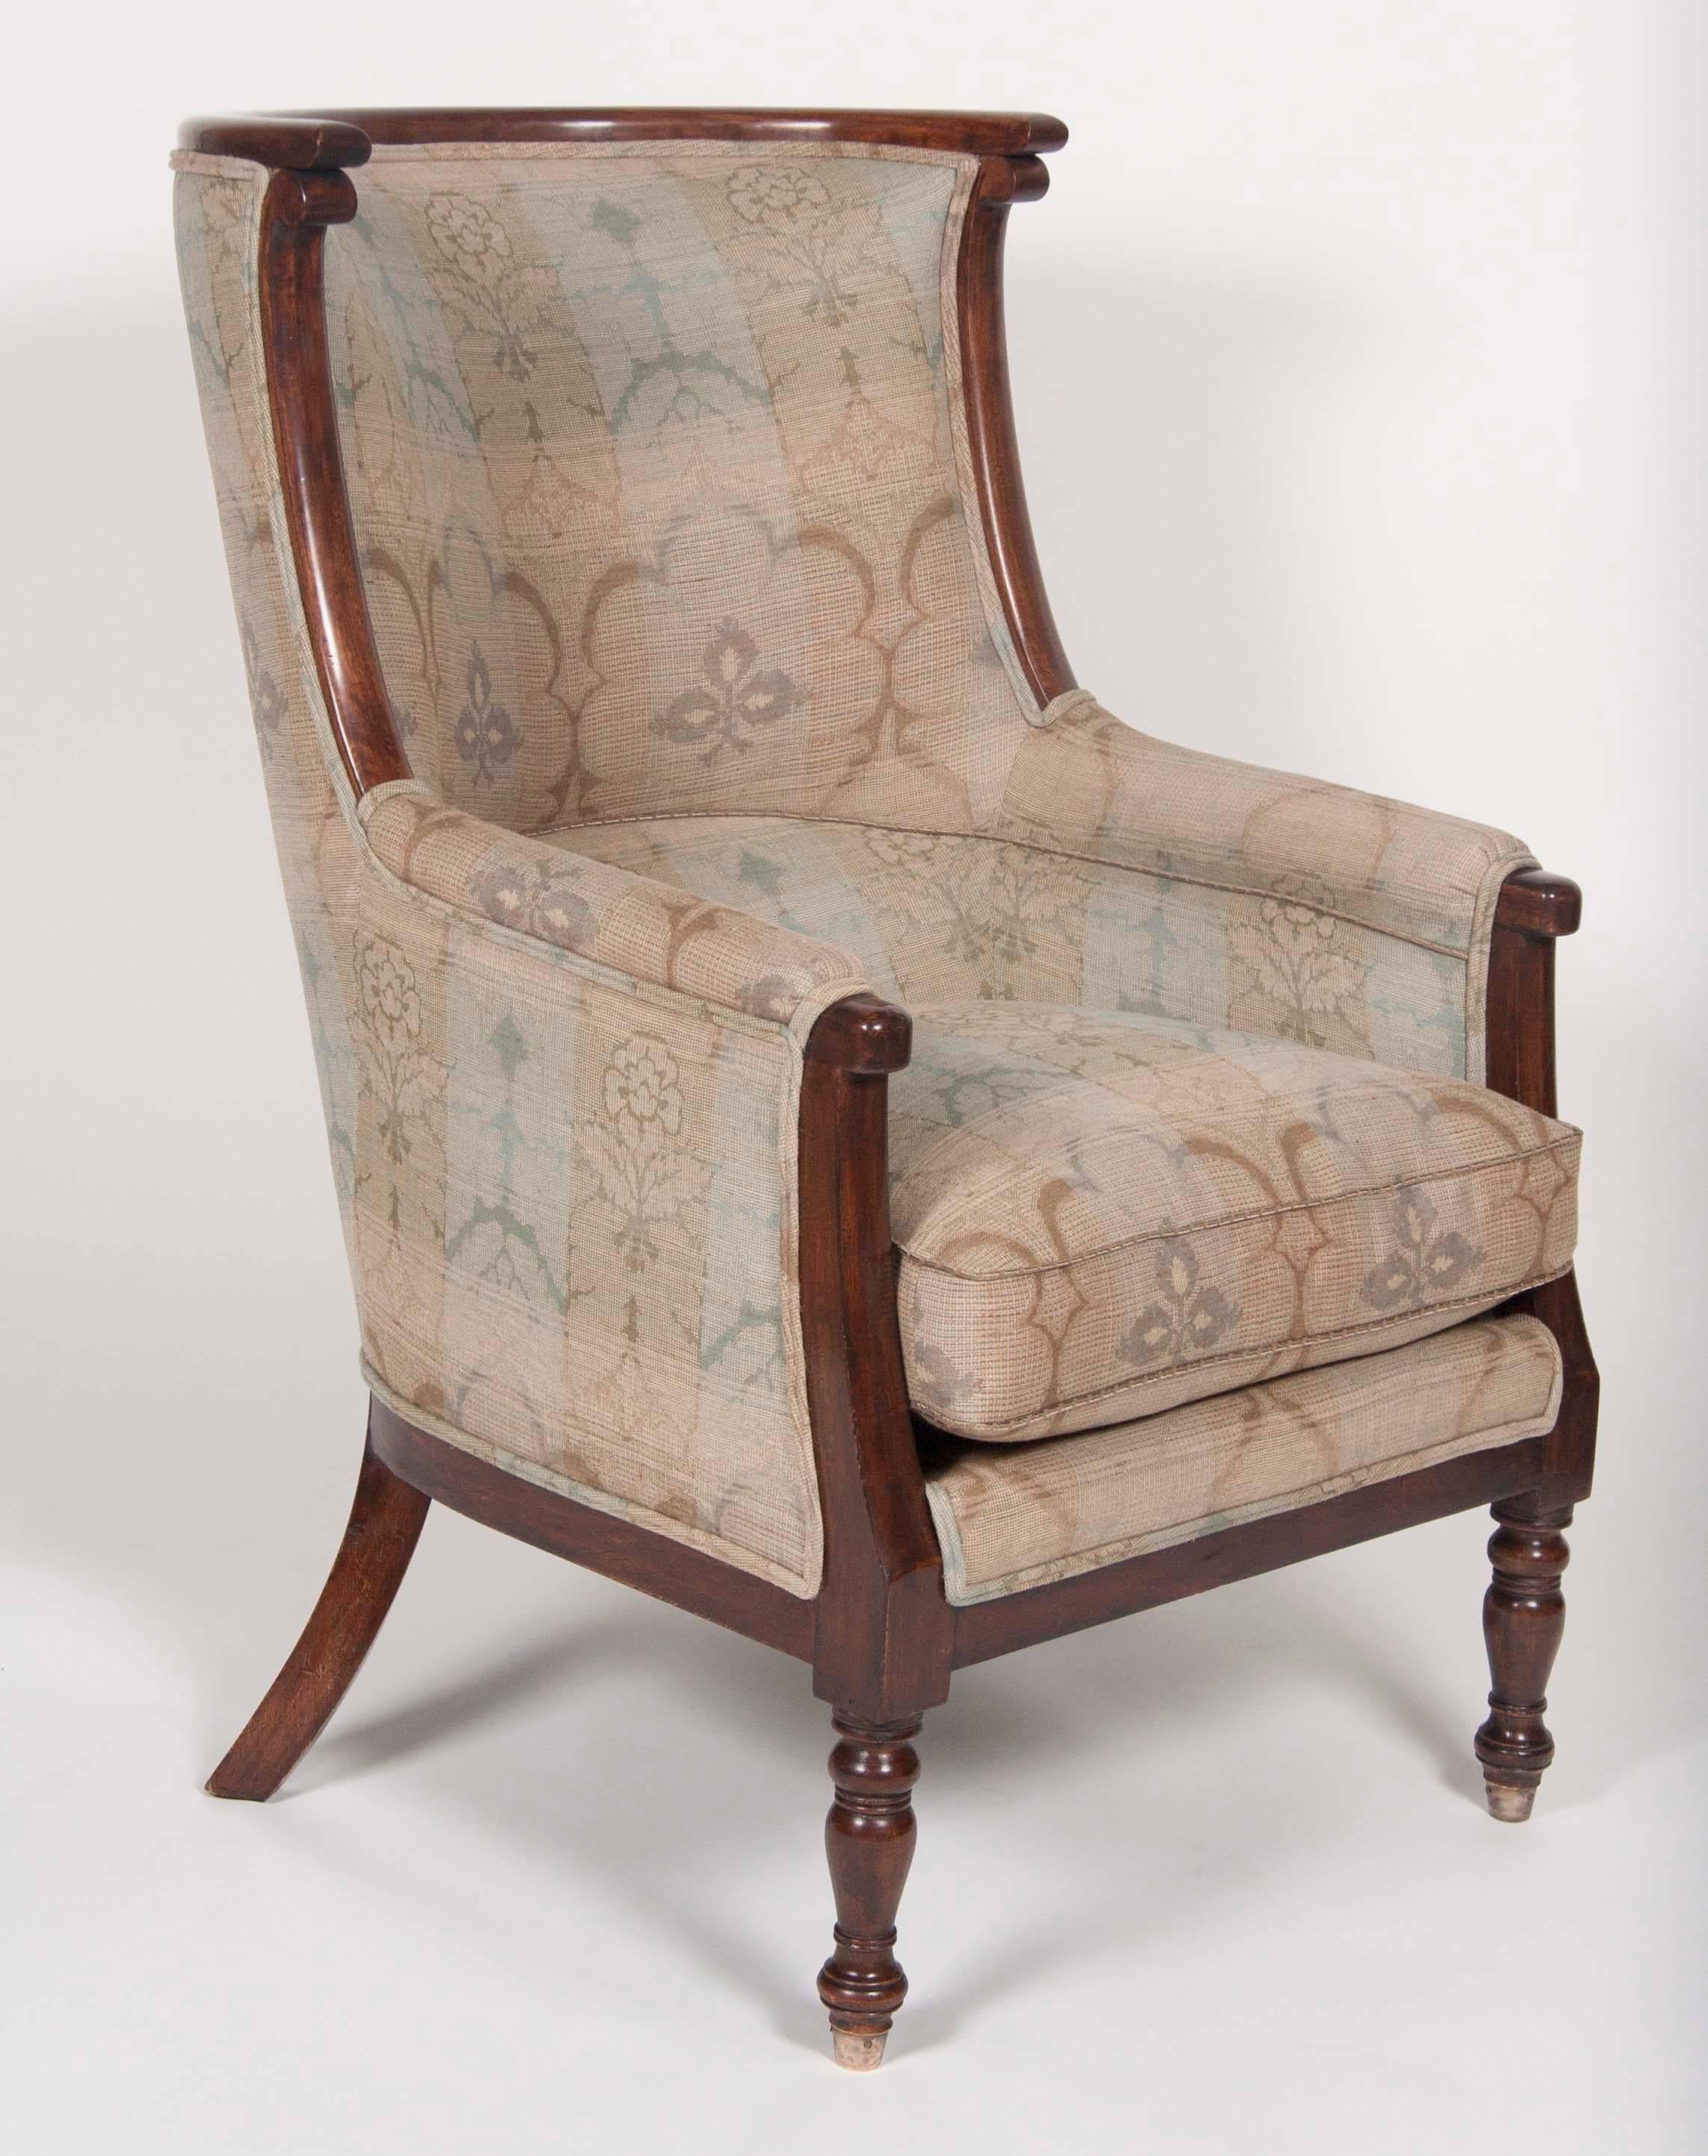 Spätfranzösischer Empire-Stuhl aus Mahagoni mit gedrechselten Beinen und einer modernen Kopie. Sehr tiefer Stuhl und äußerst bequem.

Vollständig neu gepolstert.


 